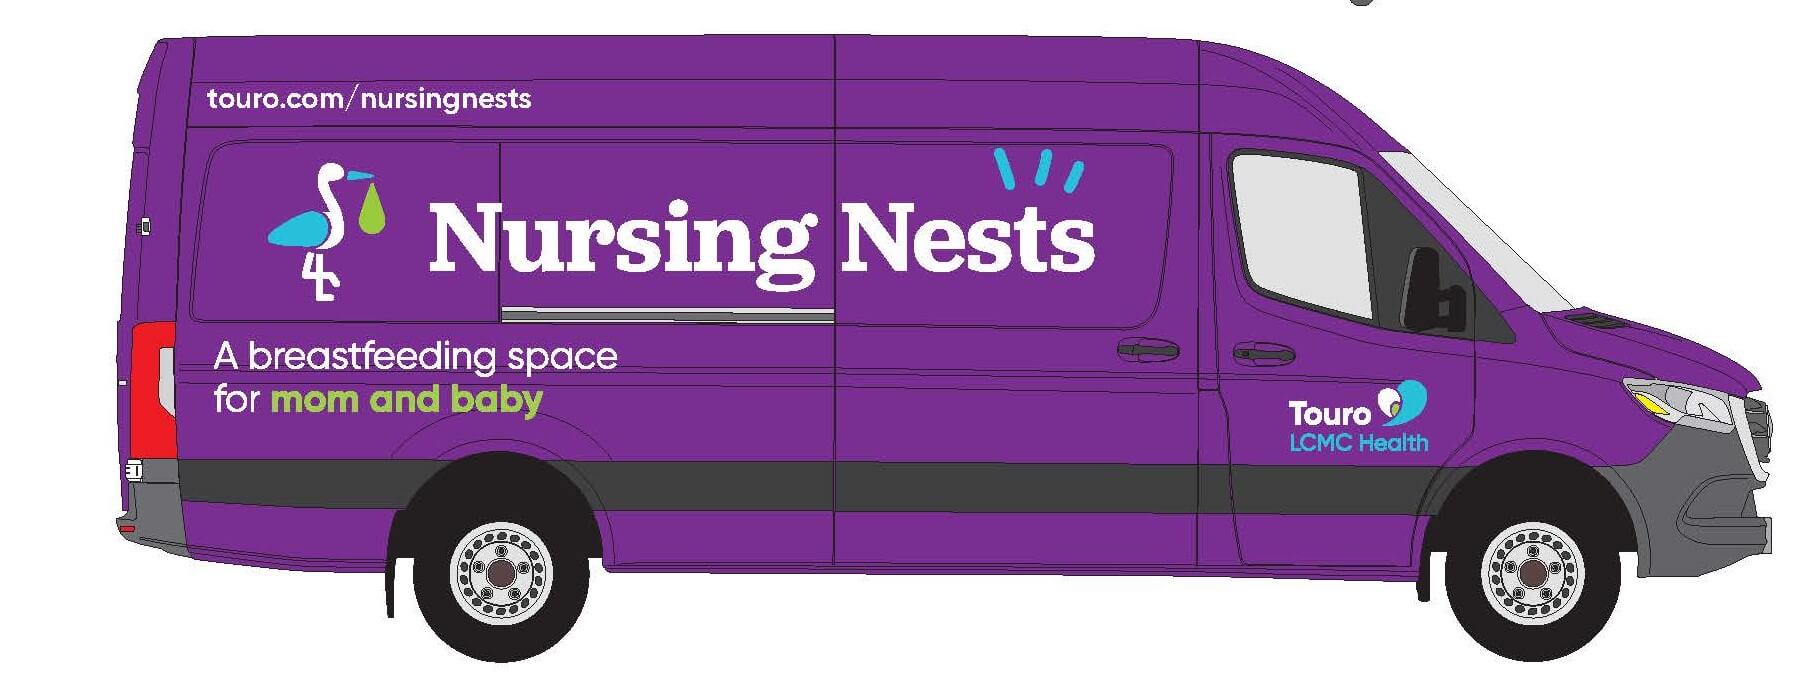 mobile nursing nest van